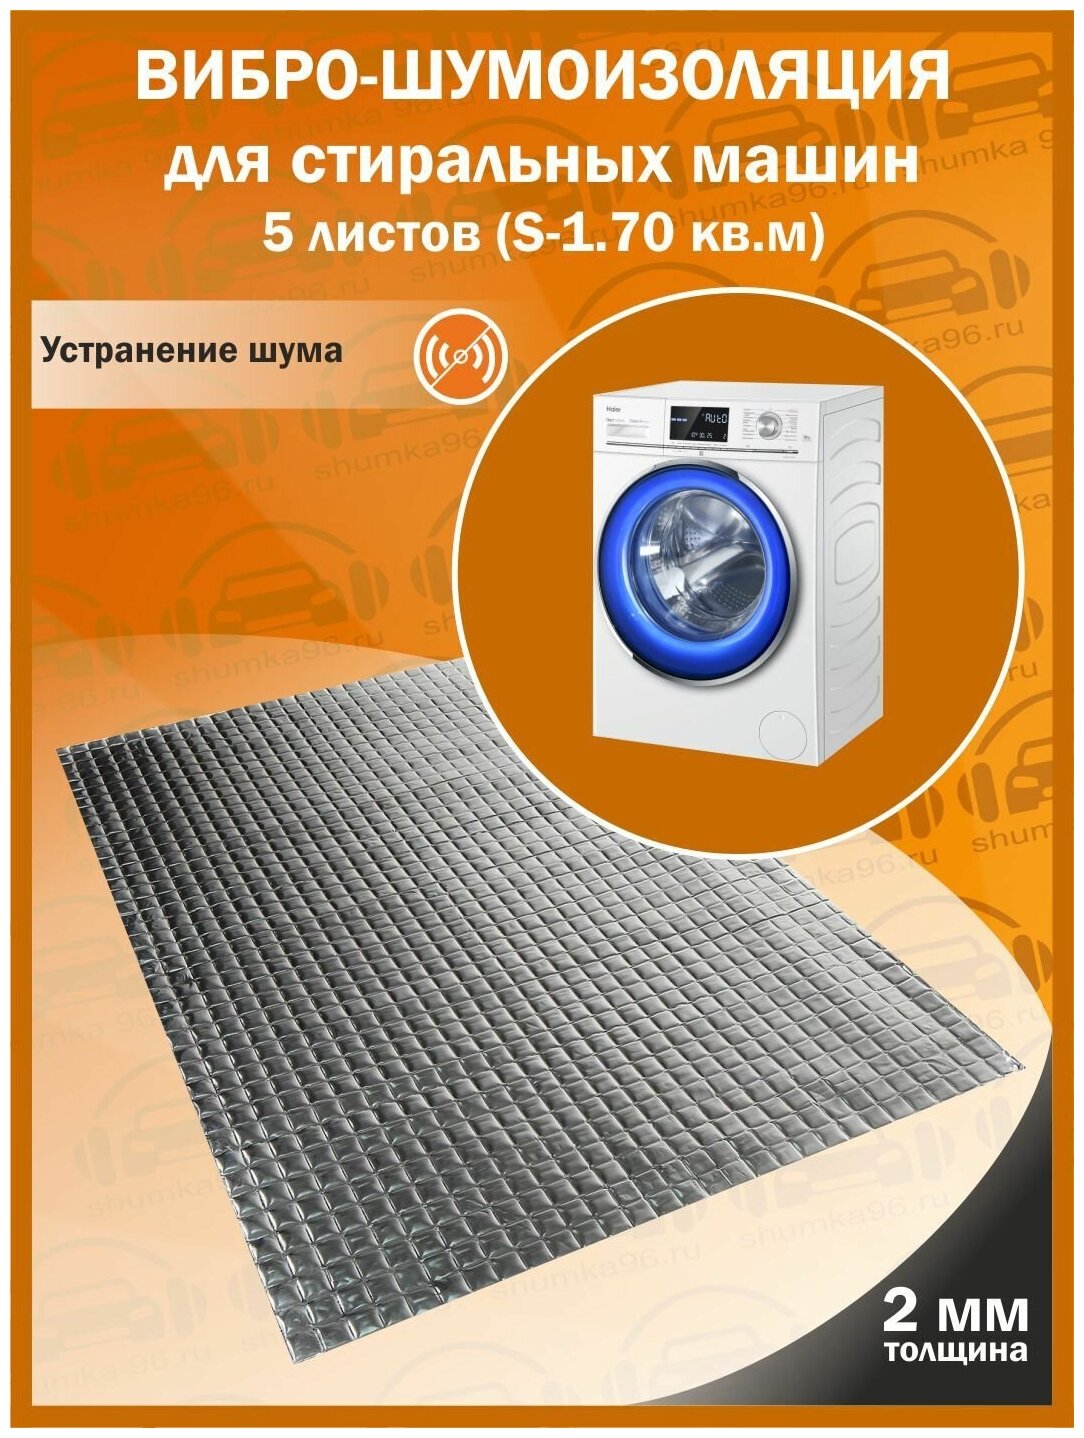 Комплект вибро-шумоизоляции для стиральных машин shumka96 (5 листов толщиной 2 мм S - 1,75 кв. м.)